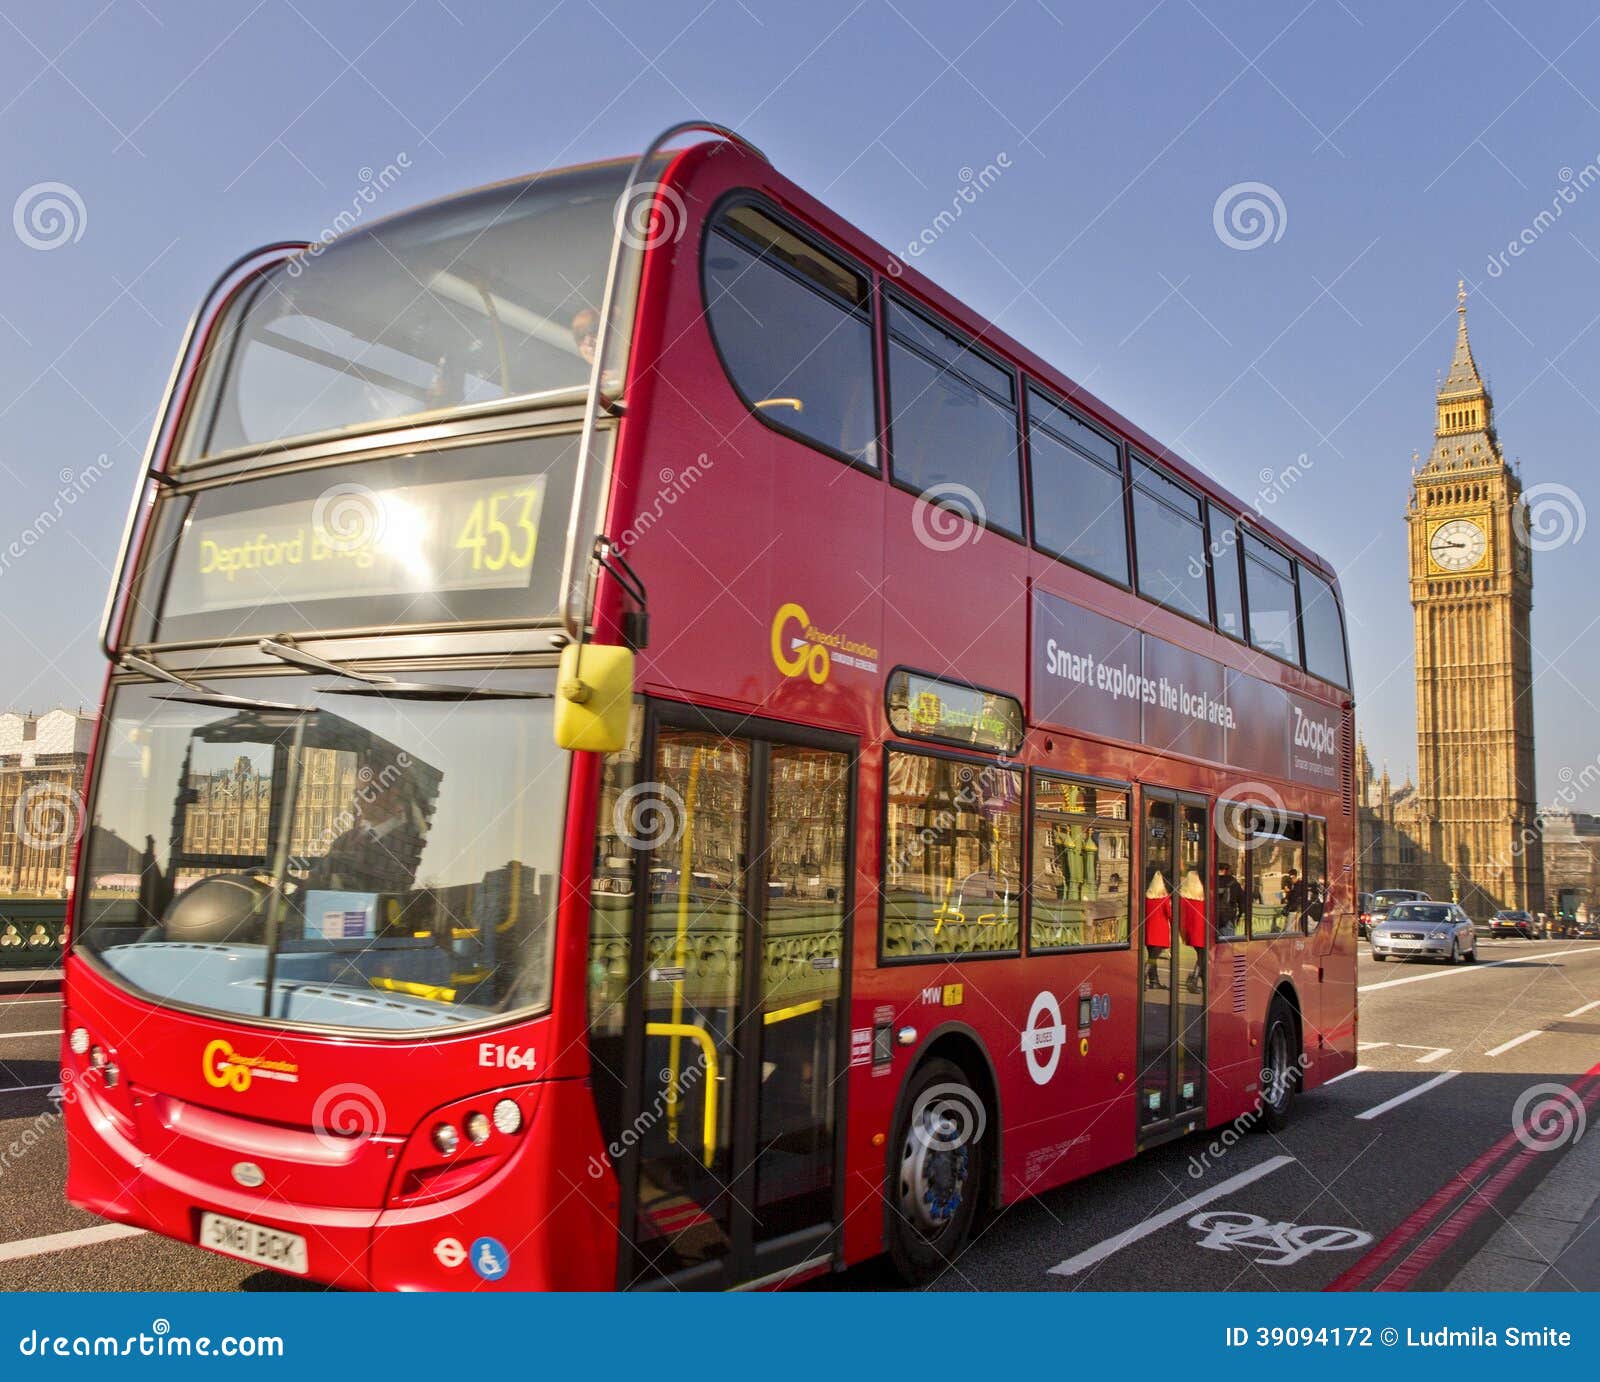 En el puente de Westminster en Londres. LONDRES - 9 DE MARZO: Autobús rojo de Londres el 9 de marzo de 2014, Londres, Reino Unido.  Autobús de Londres que cruza el puente de Westminster en el Reino Unido el 9 de marzo de 2014 en Londres, Inglaterra